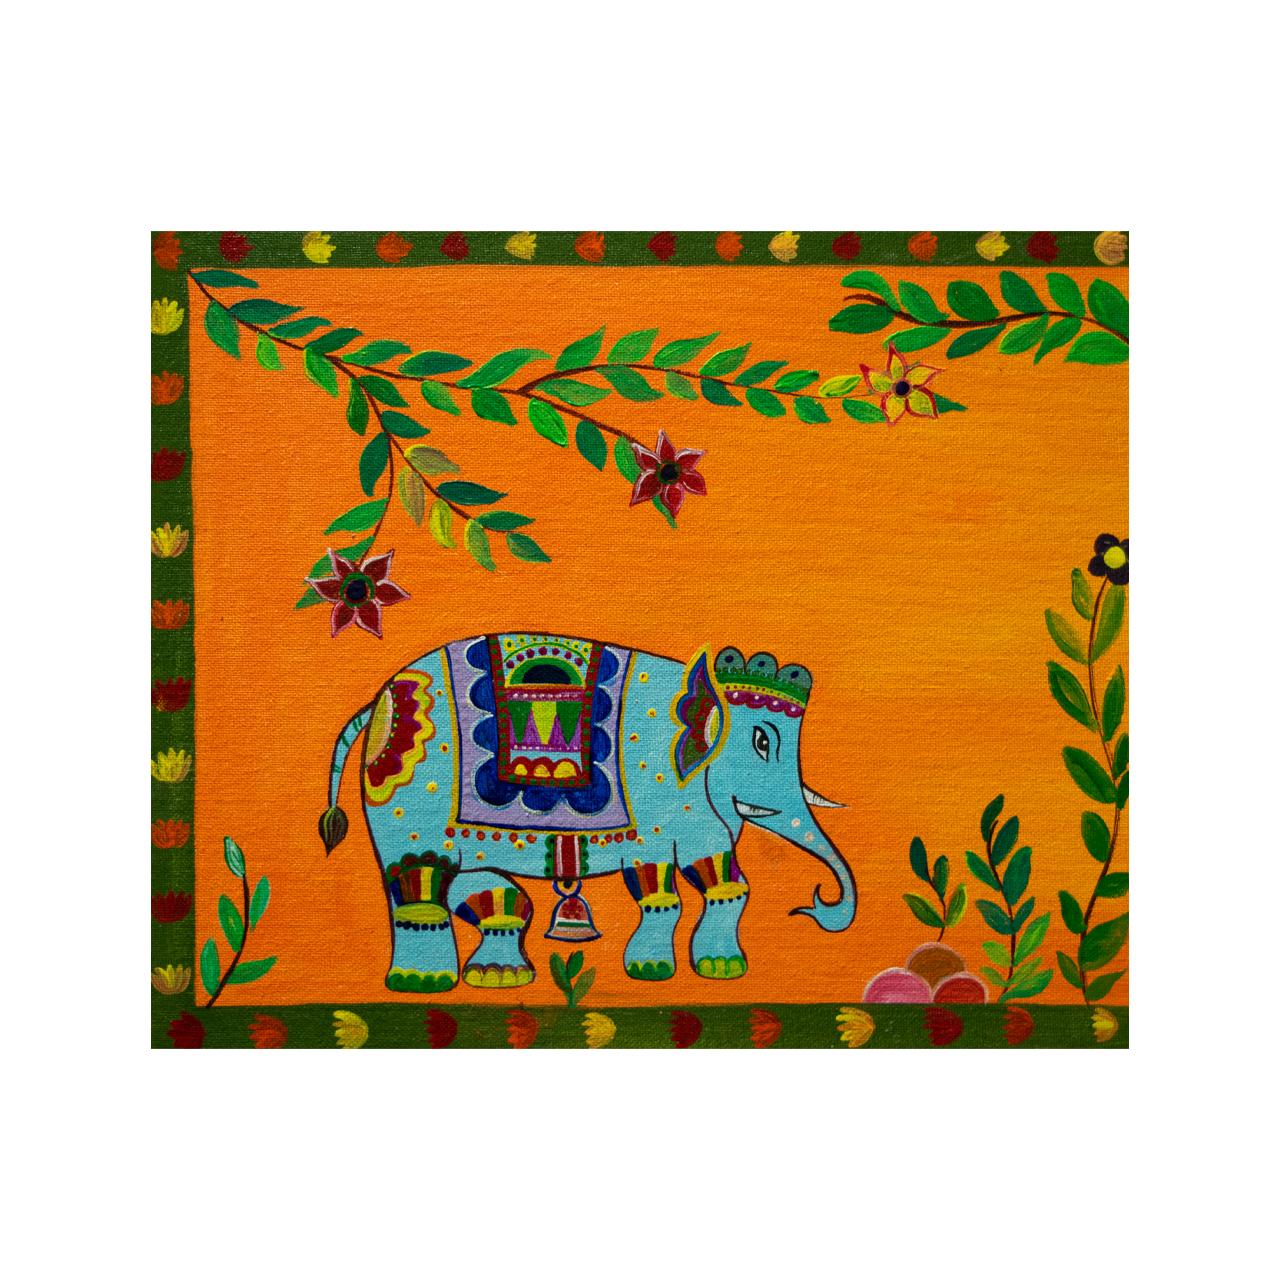 MADHUBANI STYLE 01 (DECORATED ELEPHANTS) - Painting by Jay Patel